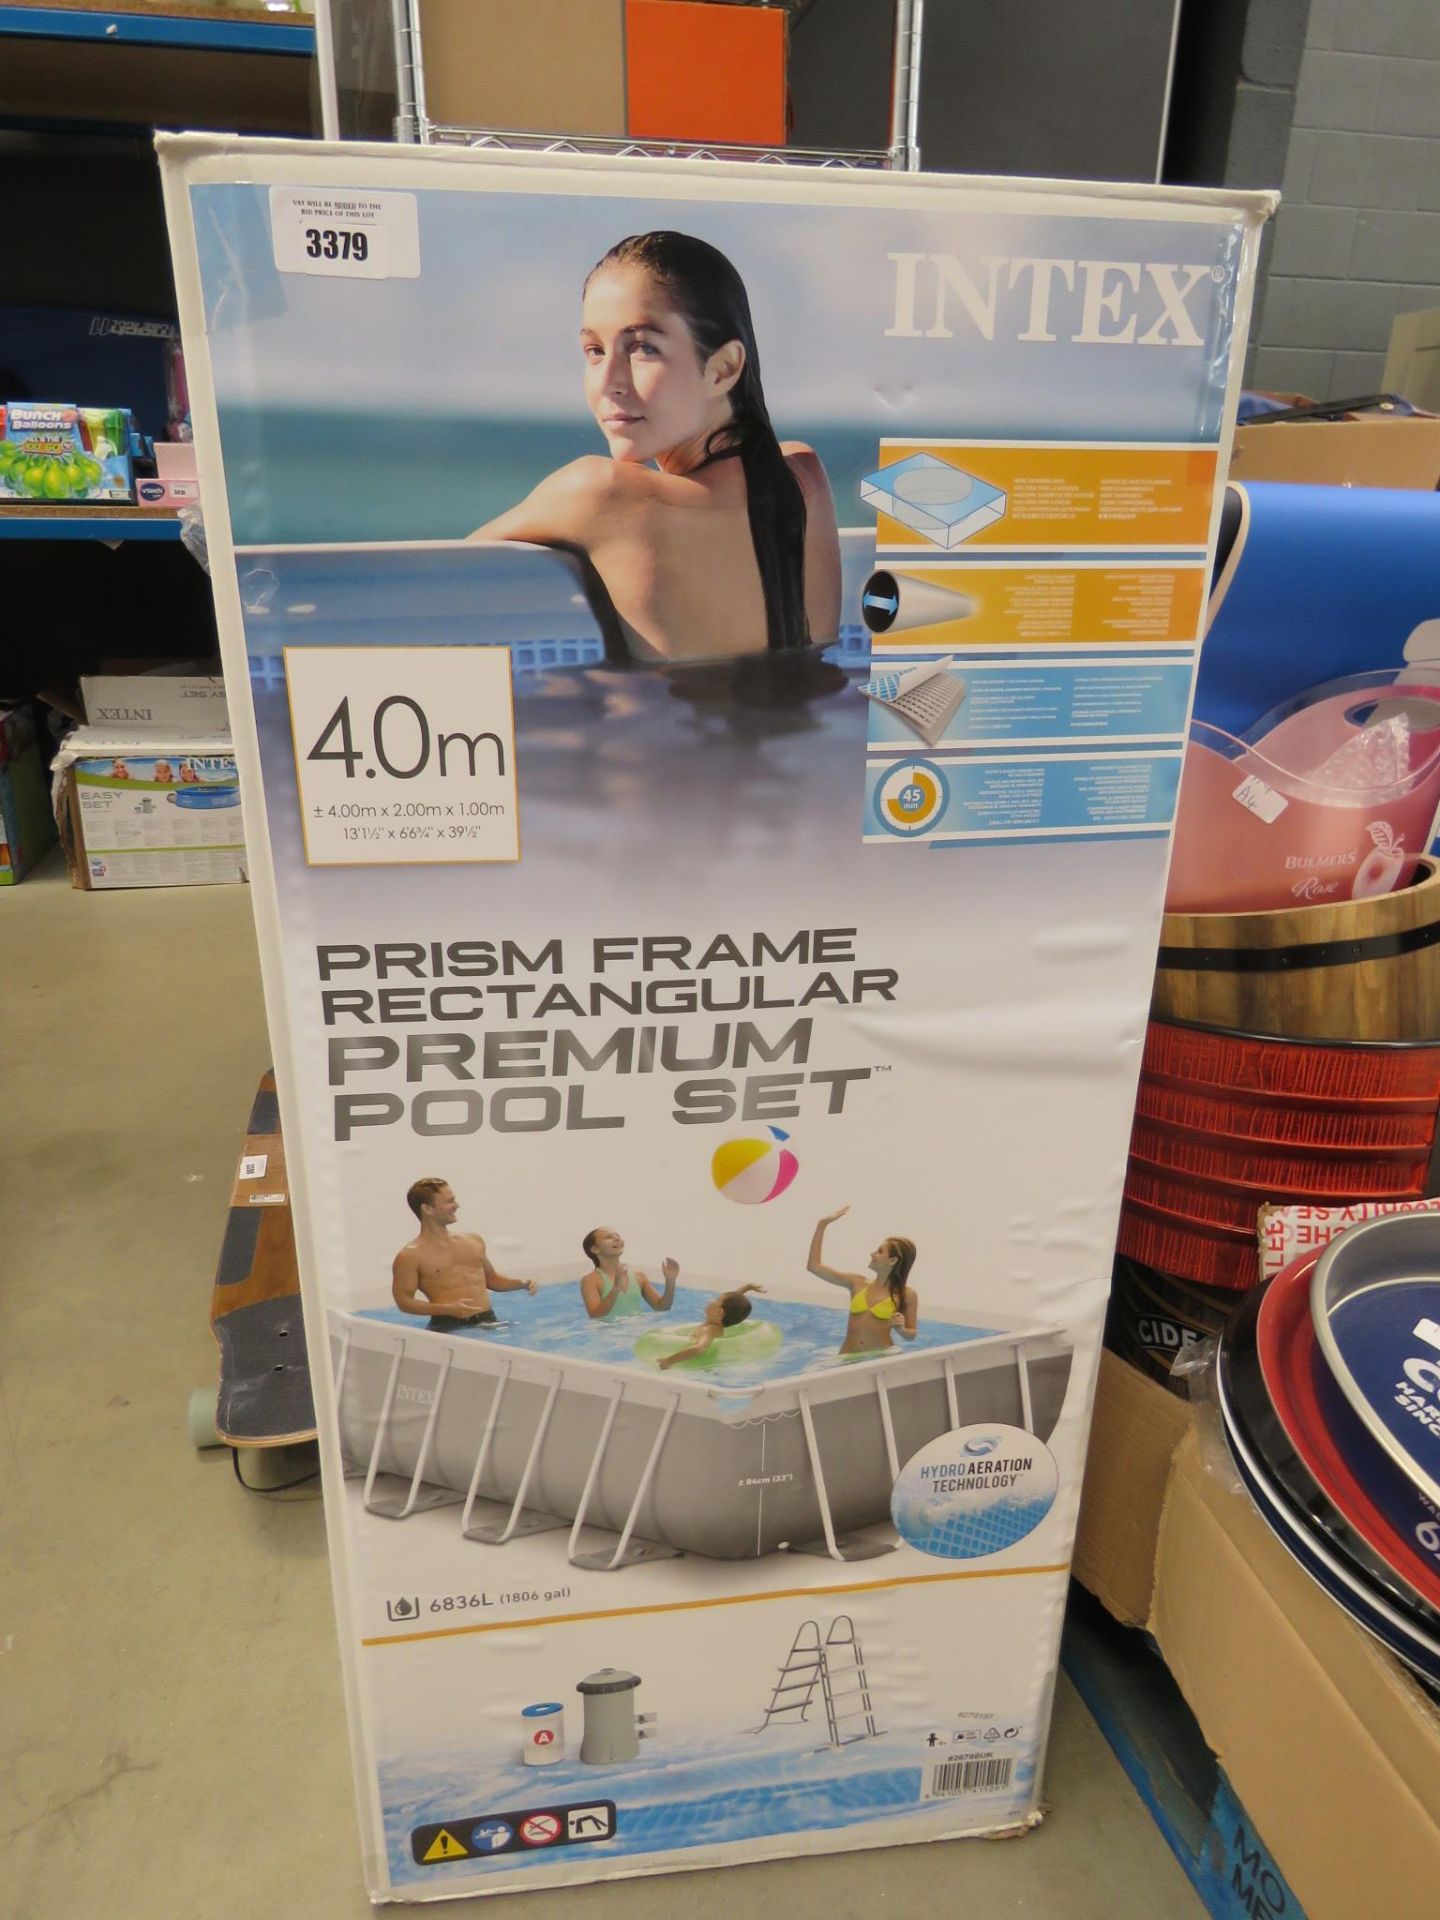 Intex pool set in box